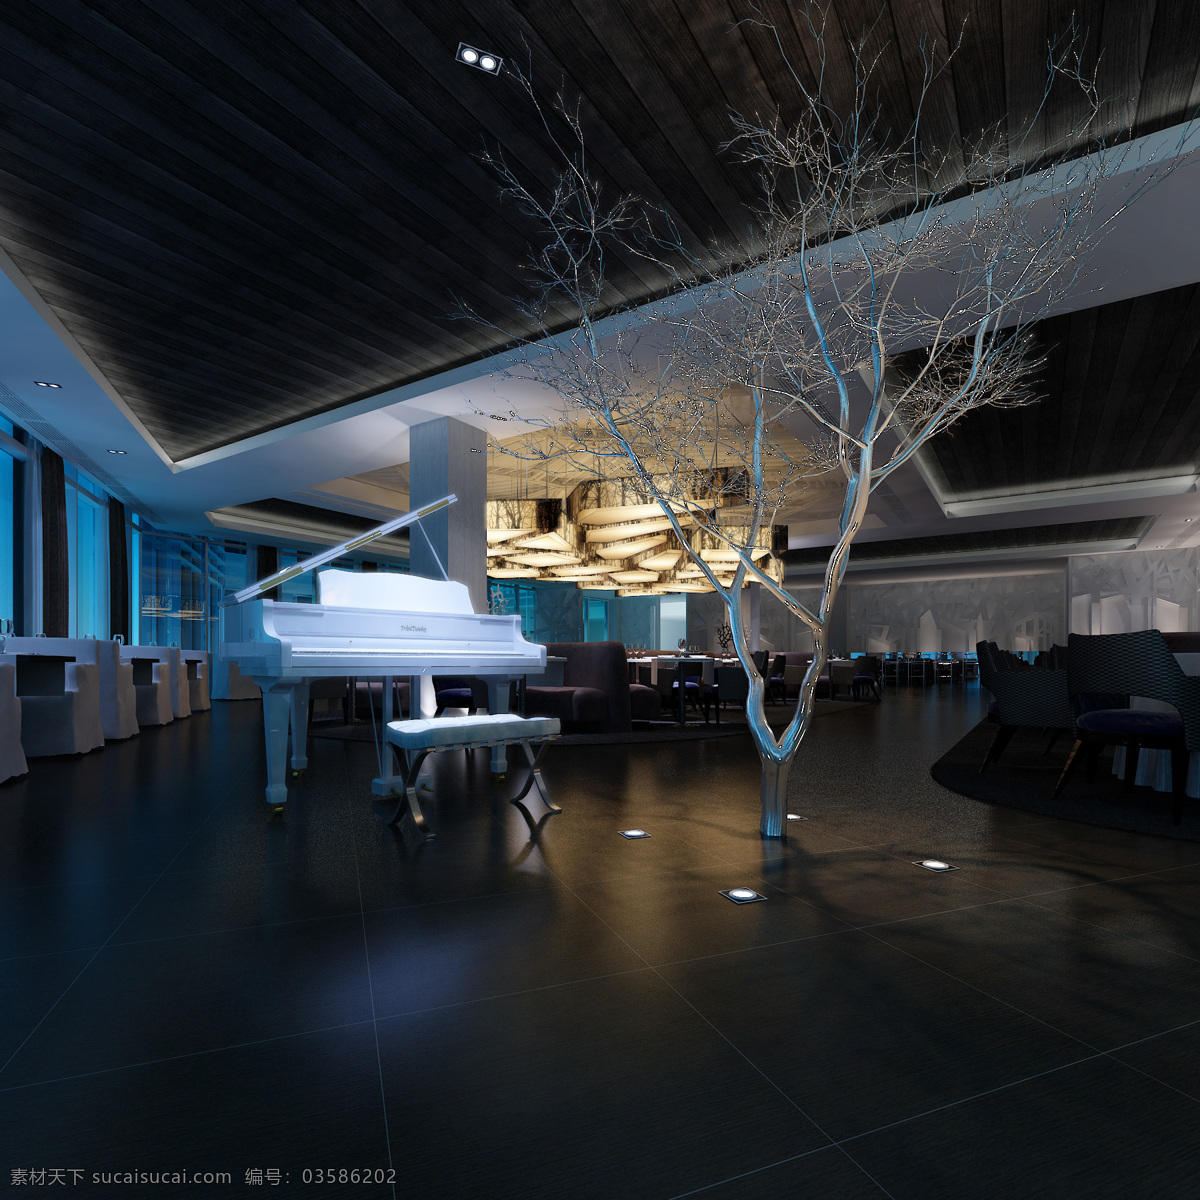 酒吧设计 酒吧 树影婆娑 灯光 钢琴 浪漫 冷暖对比 环境设计 室内设计